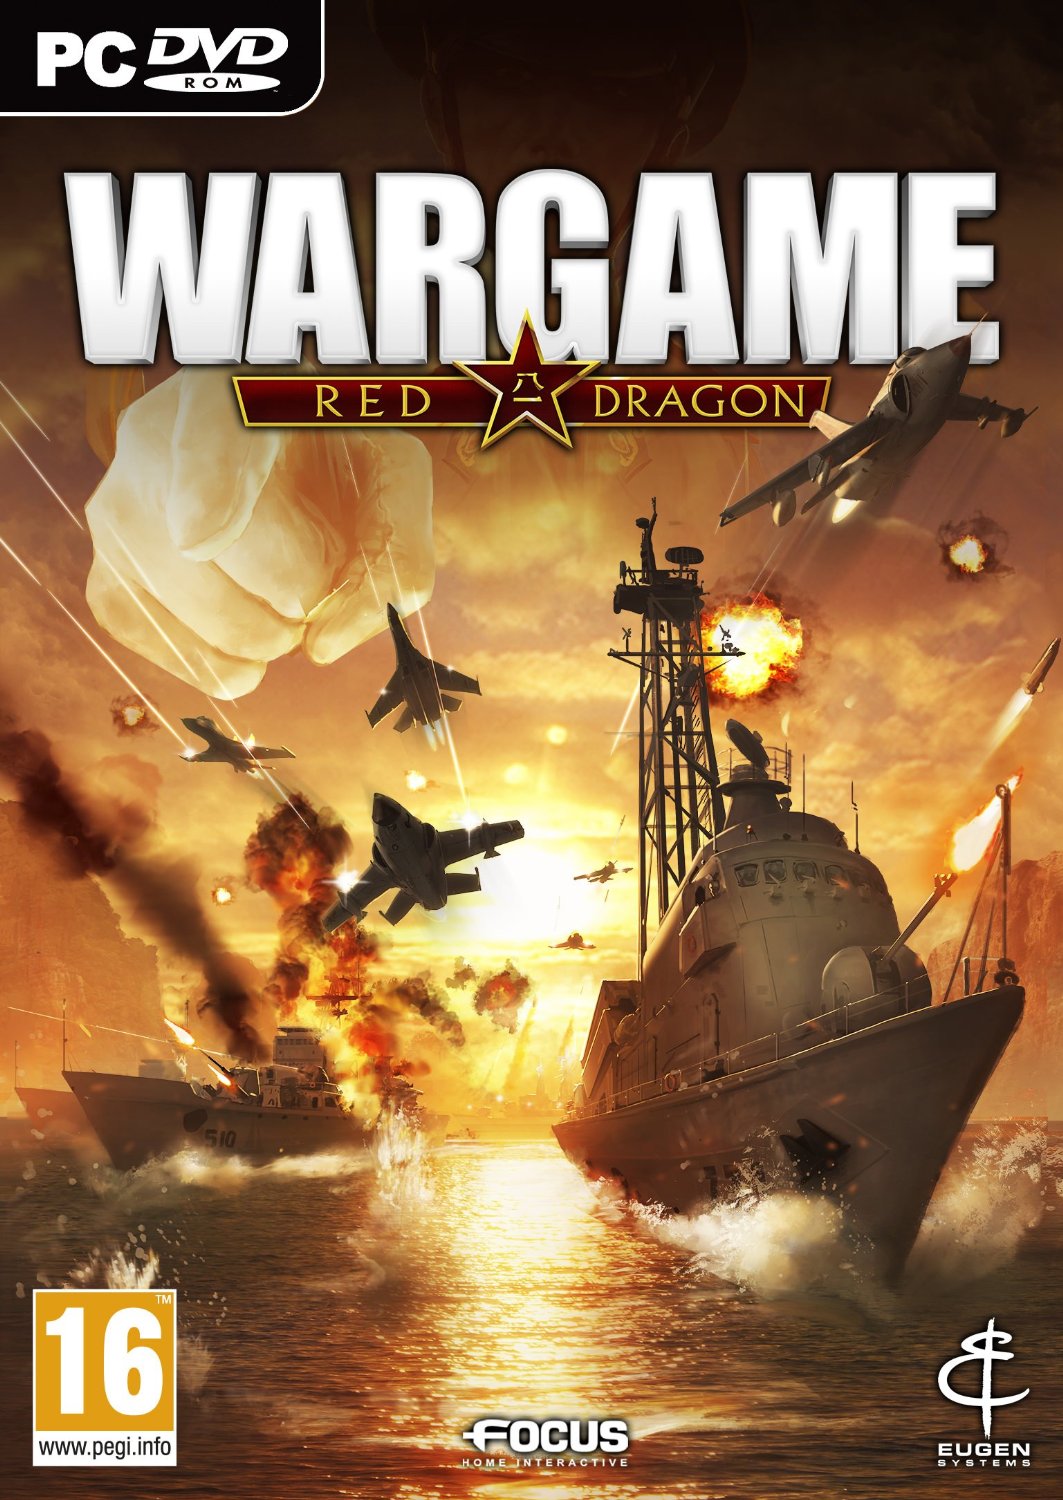 Wargame red dragon mac download version